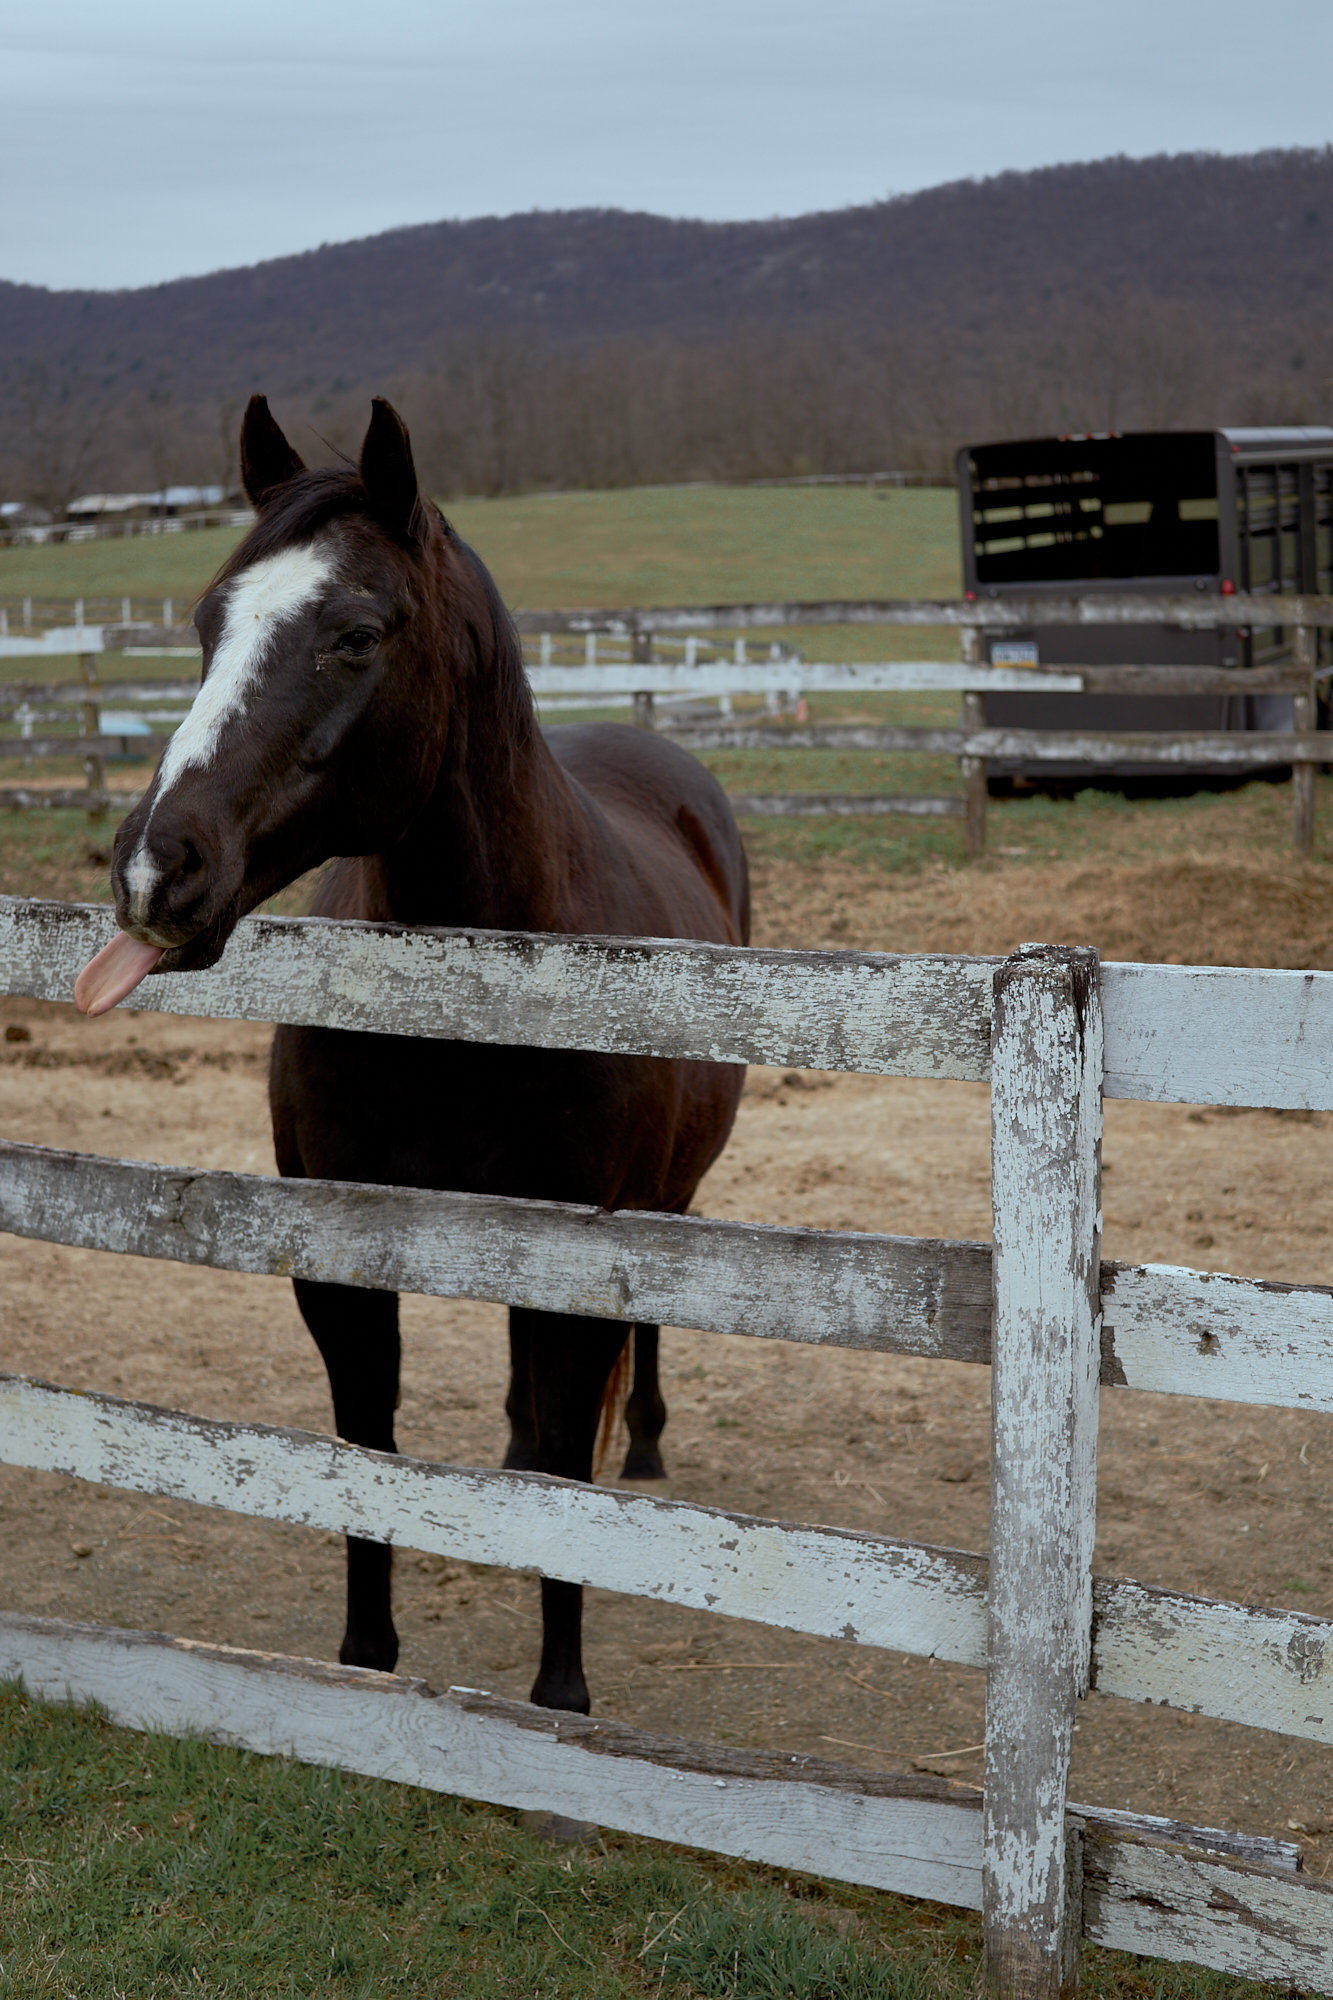 Big Sky Horse Farm, Carlisle, Pennsylvania, Documentary photography